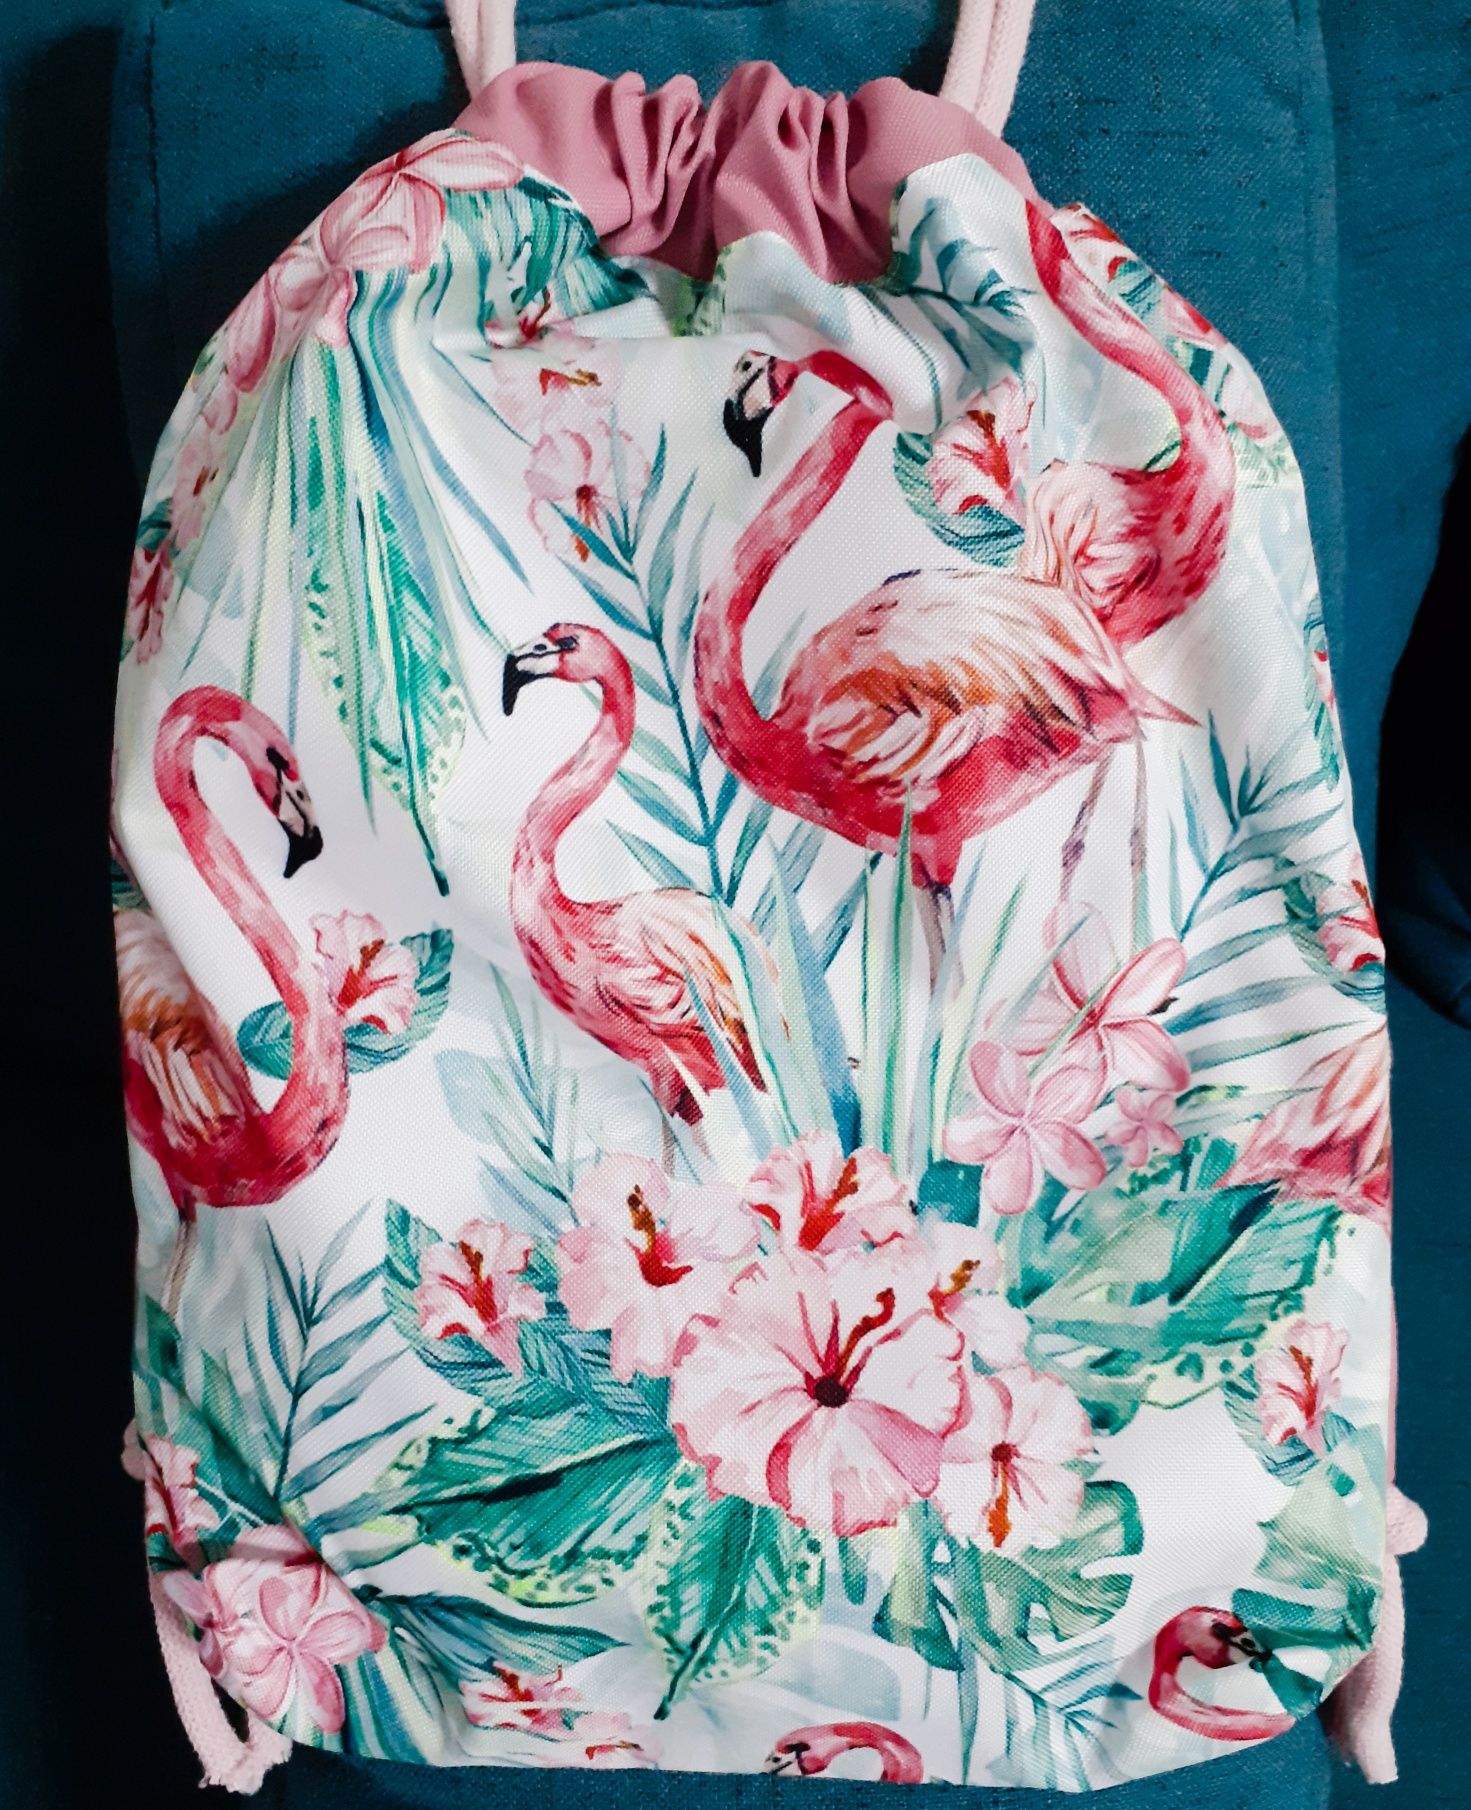 Worek plecak handmade dla dziecka piłka, wróżki, pasy, flamingi